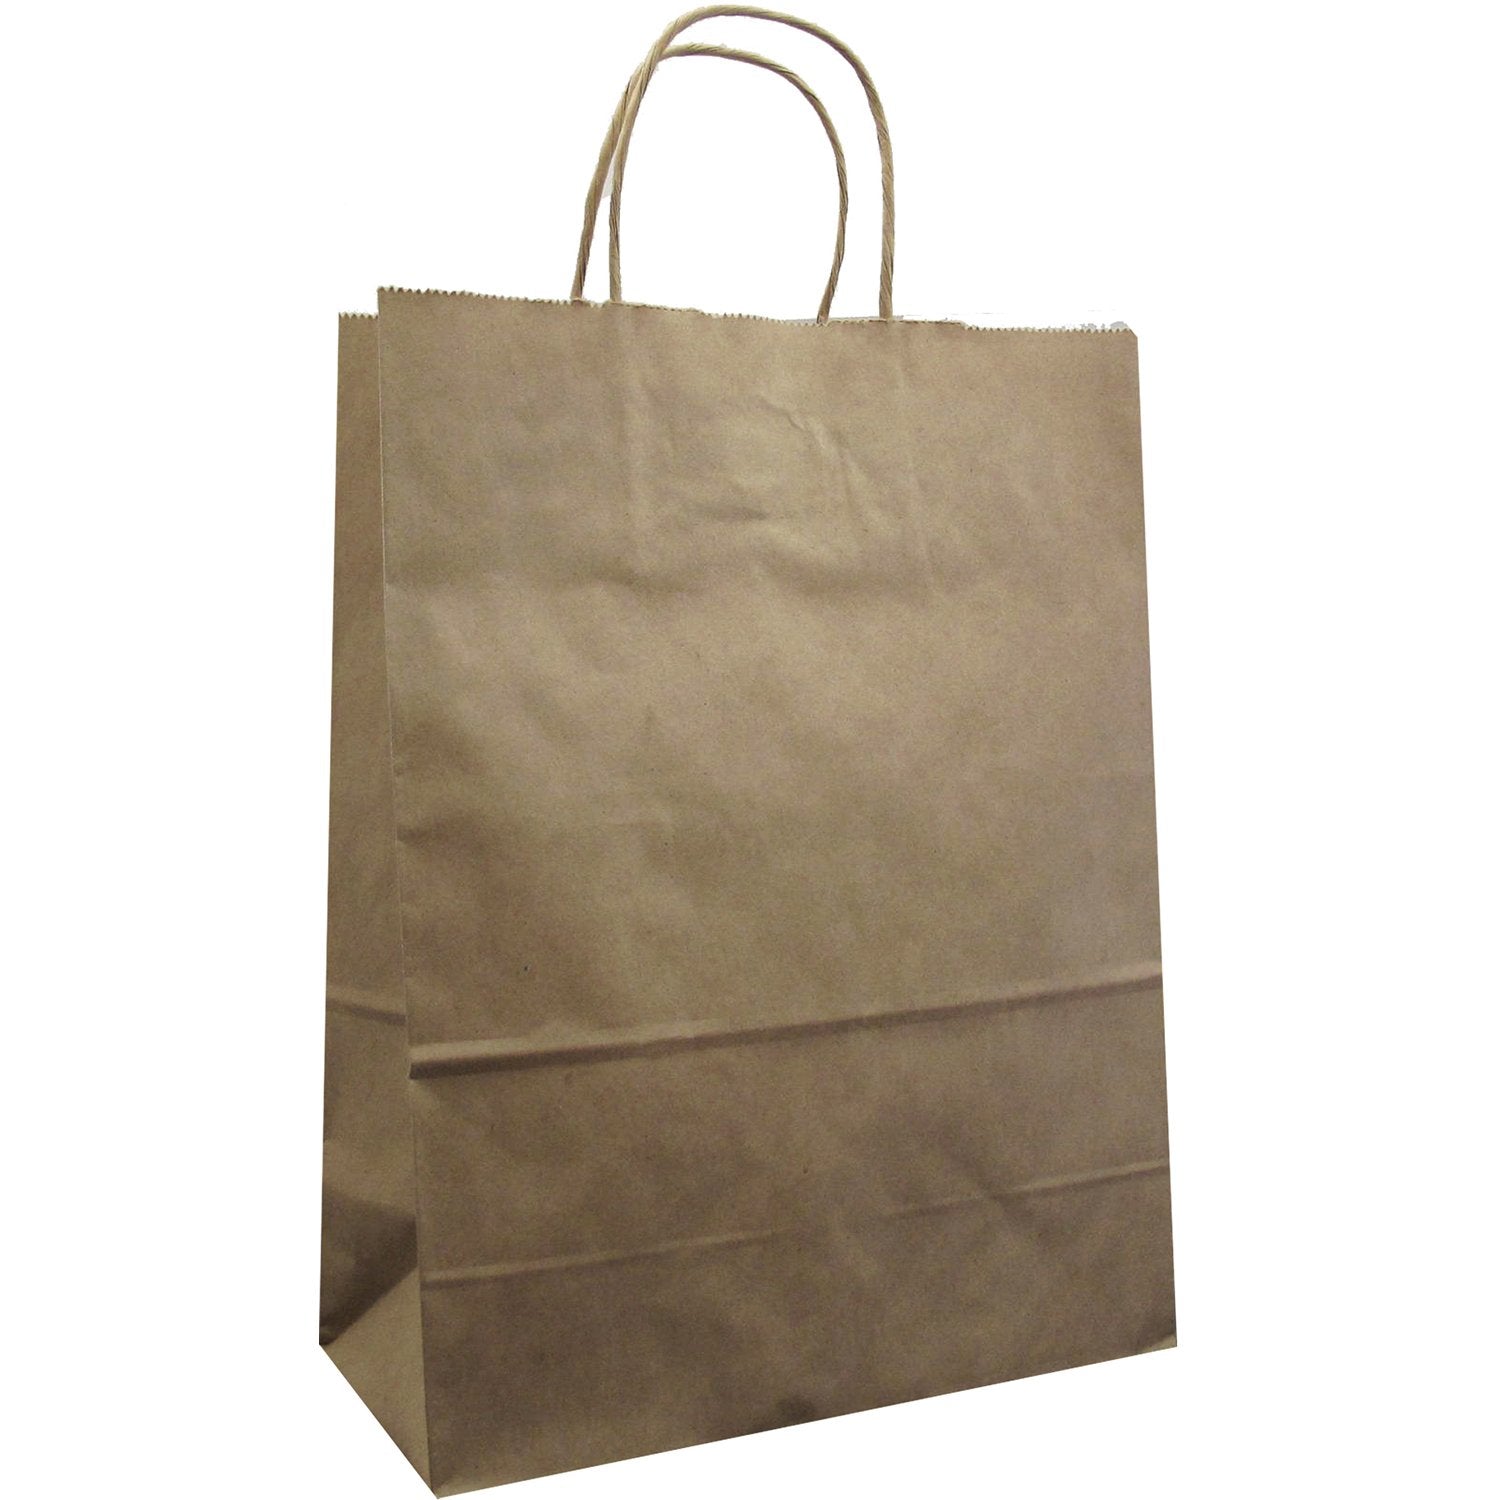 Jillson & Roberts Medium Kraft Bags, Natural